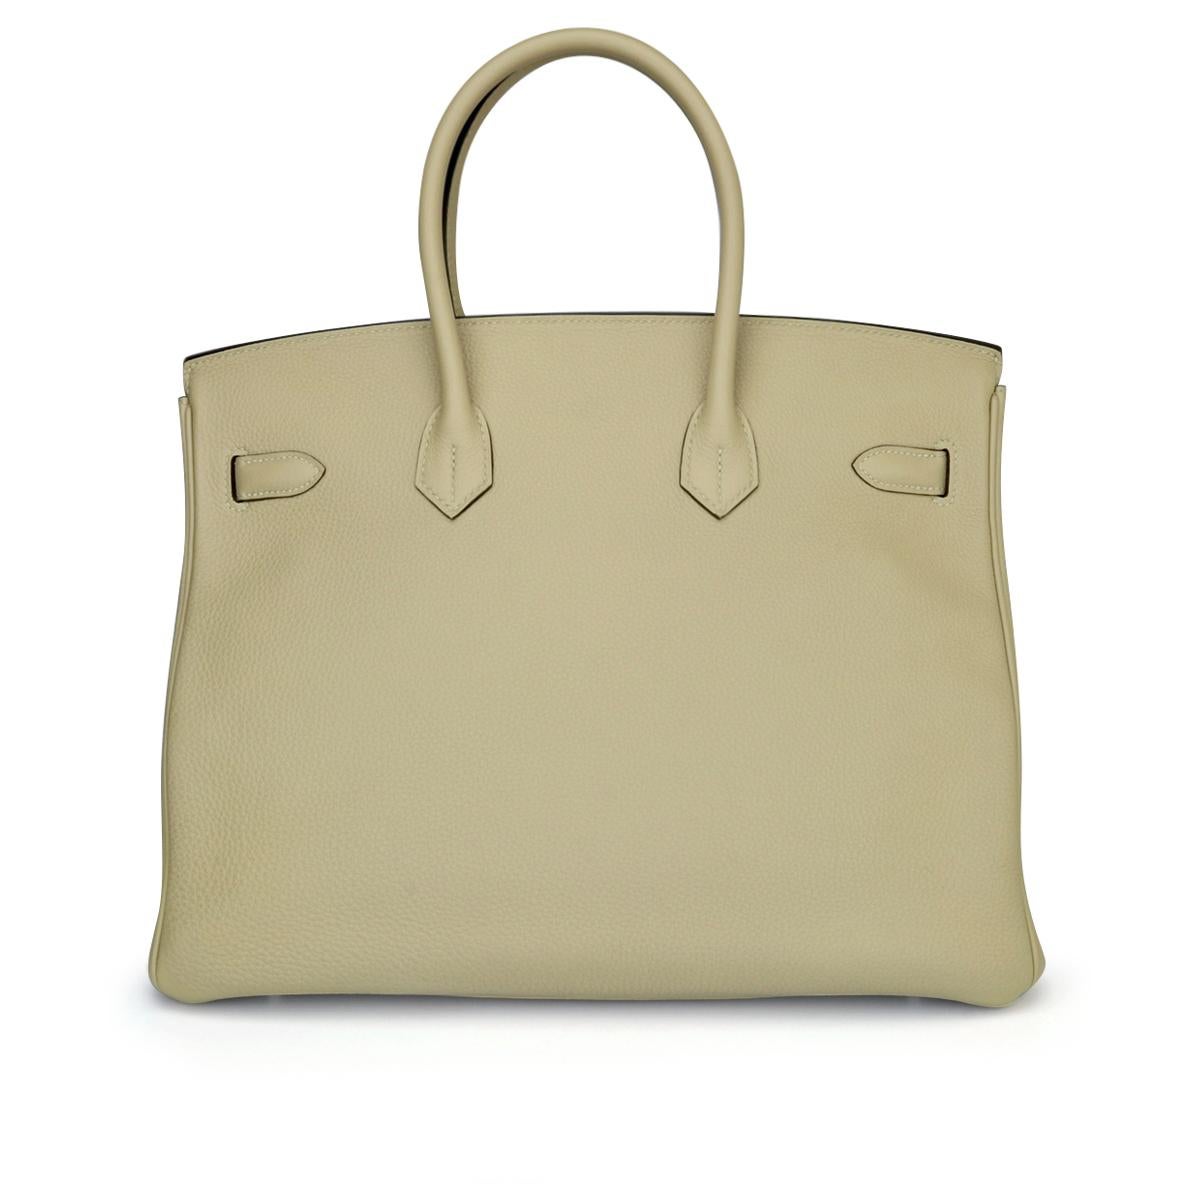 Hermès Birkin Bag 35cm Tasche Trench Togo Leder mit Palladium Hardware Stempel X (Beige)